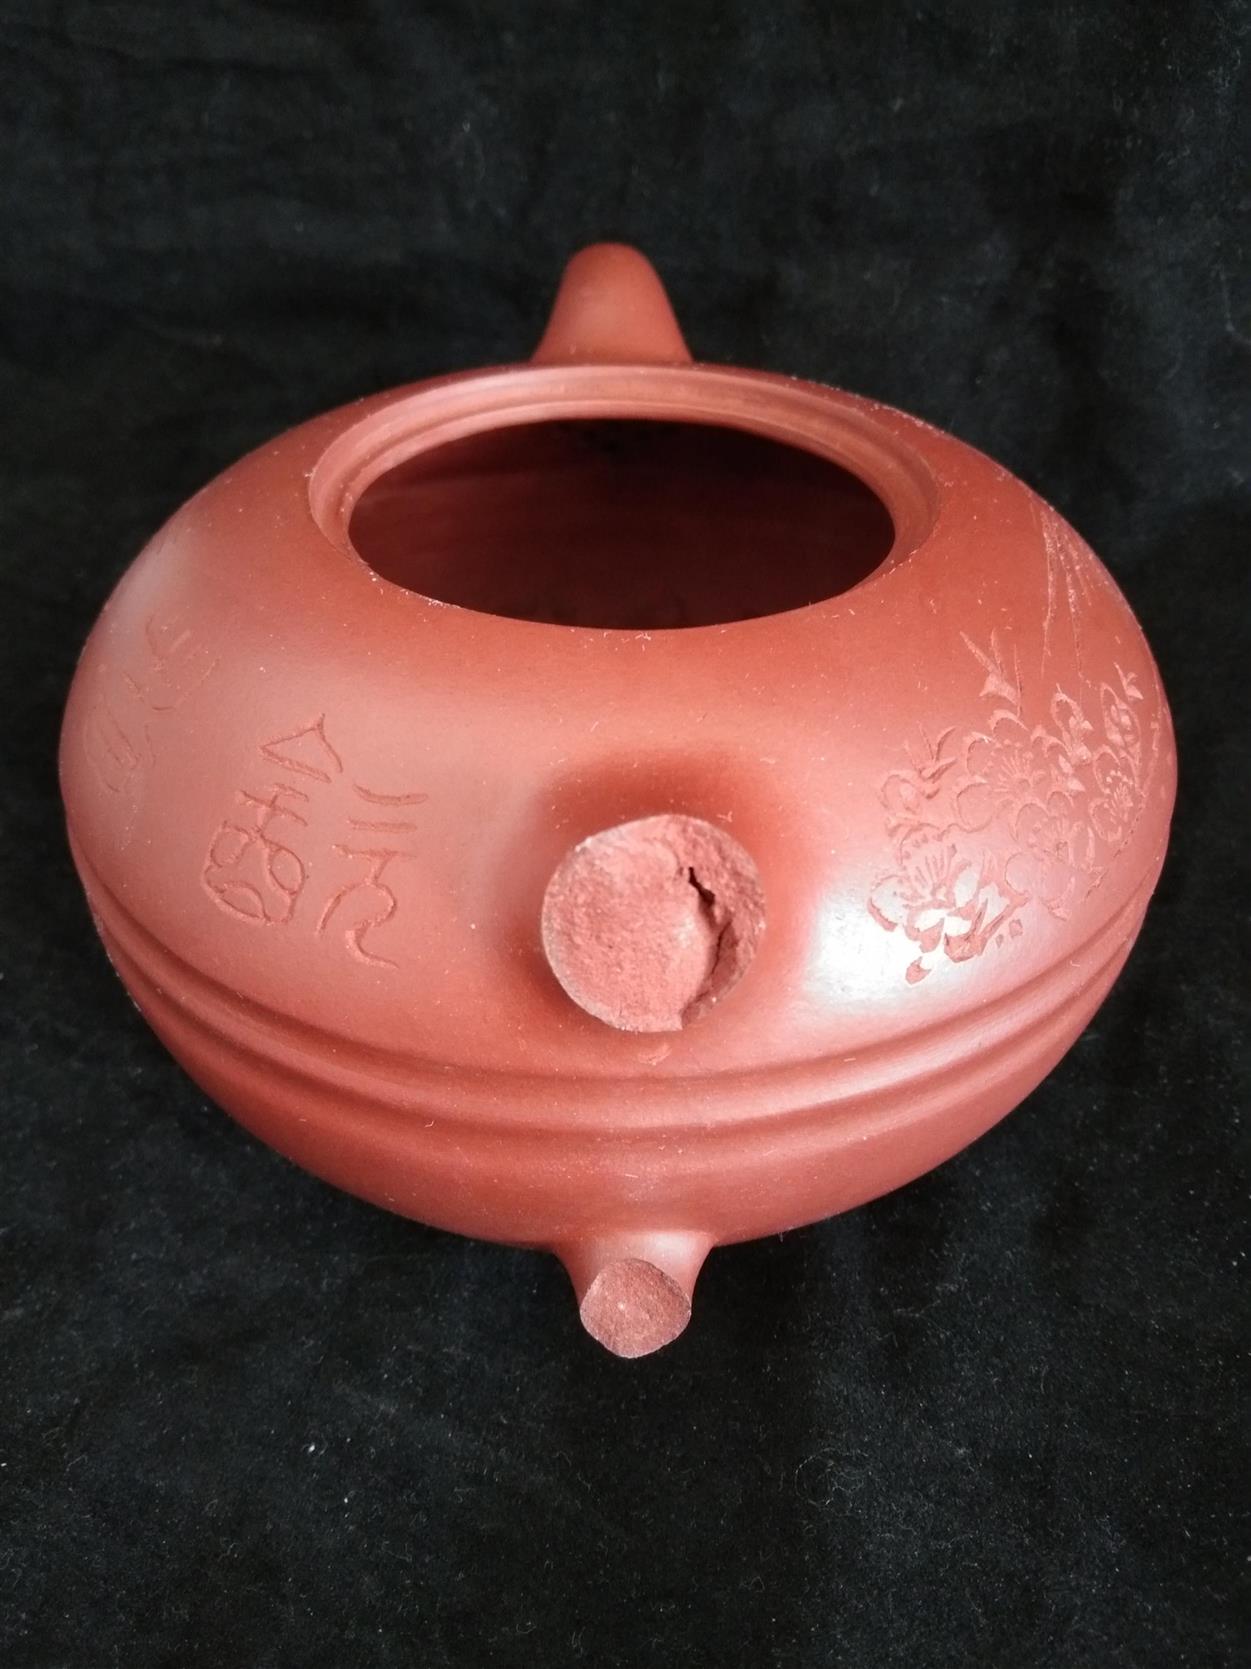 大连紫砂壶无痕修复修复缺陷 南京美瓷工艺品有限公司